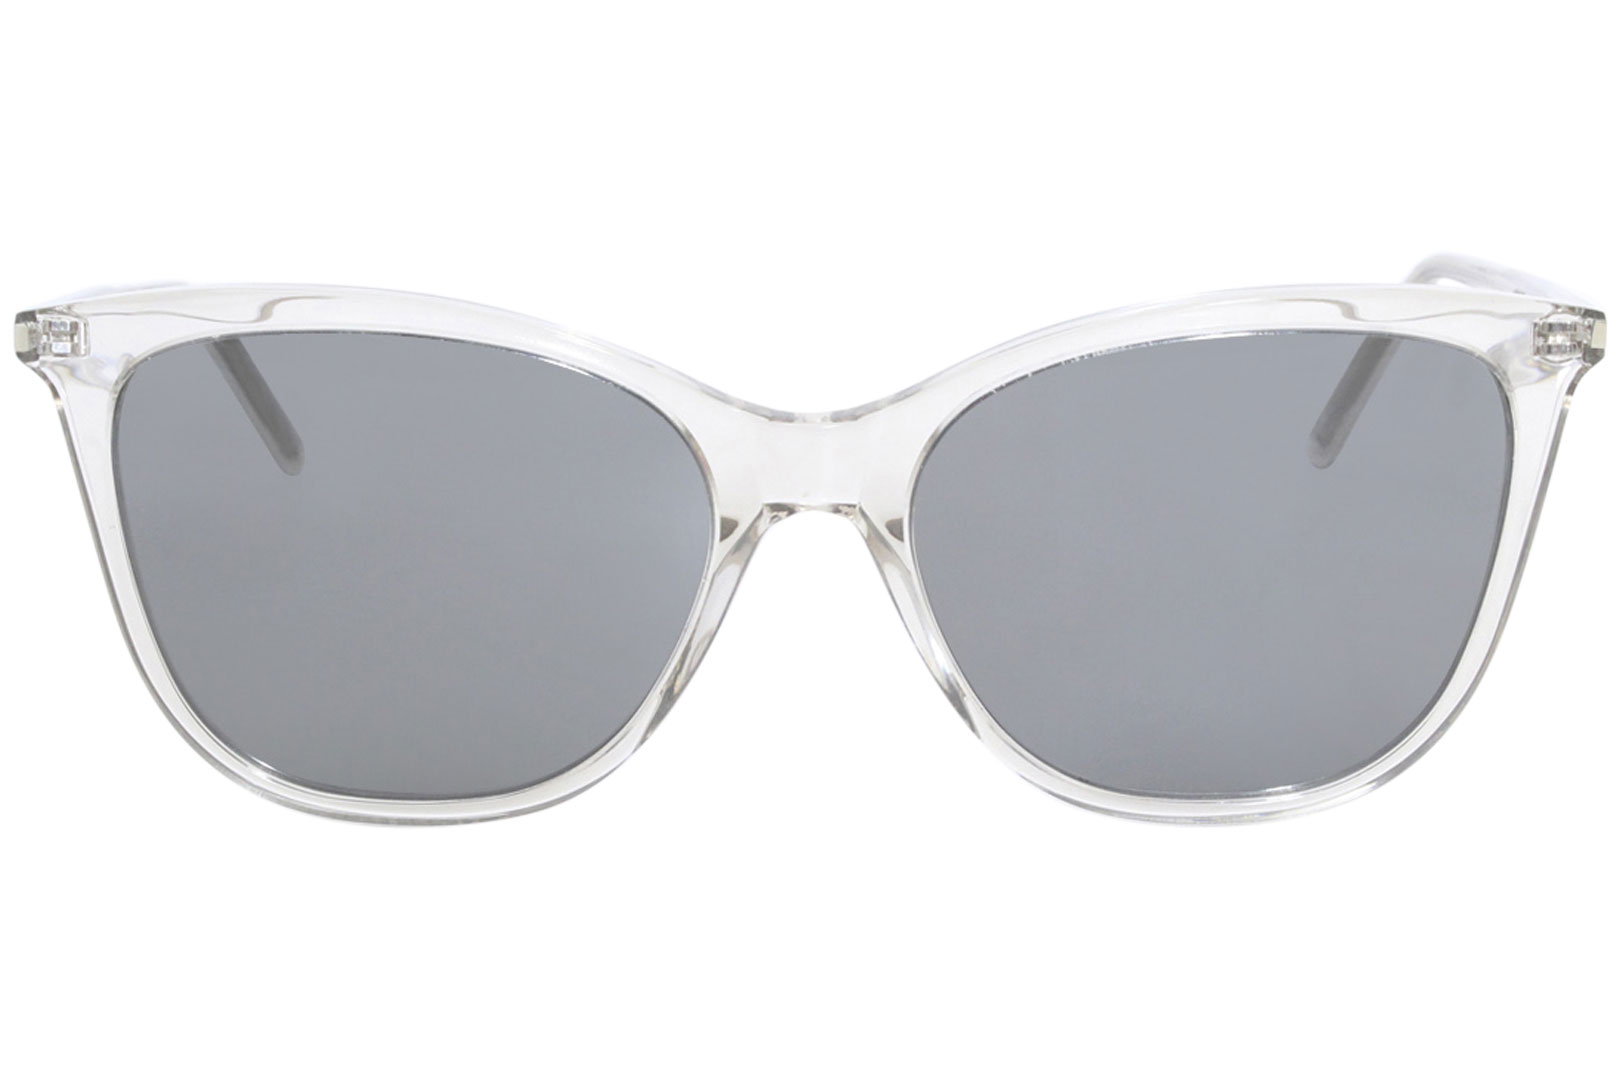 Women's Sunglasses, Mirrored & Classic, Saint Laurent